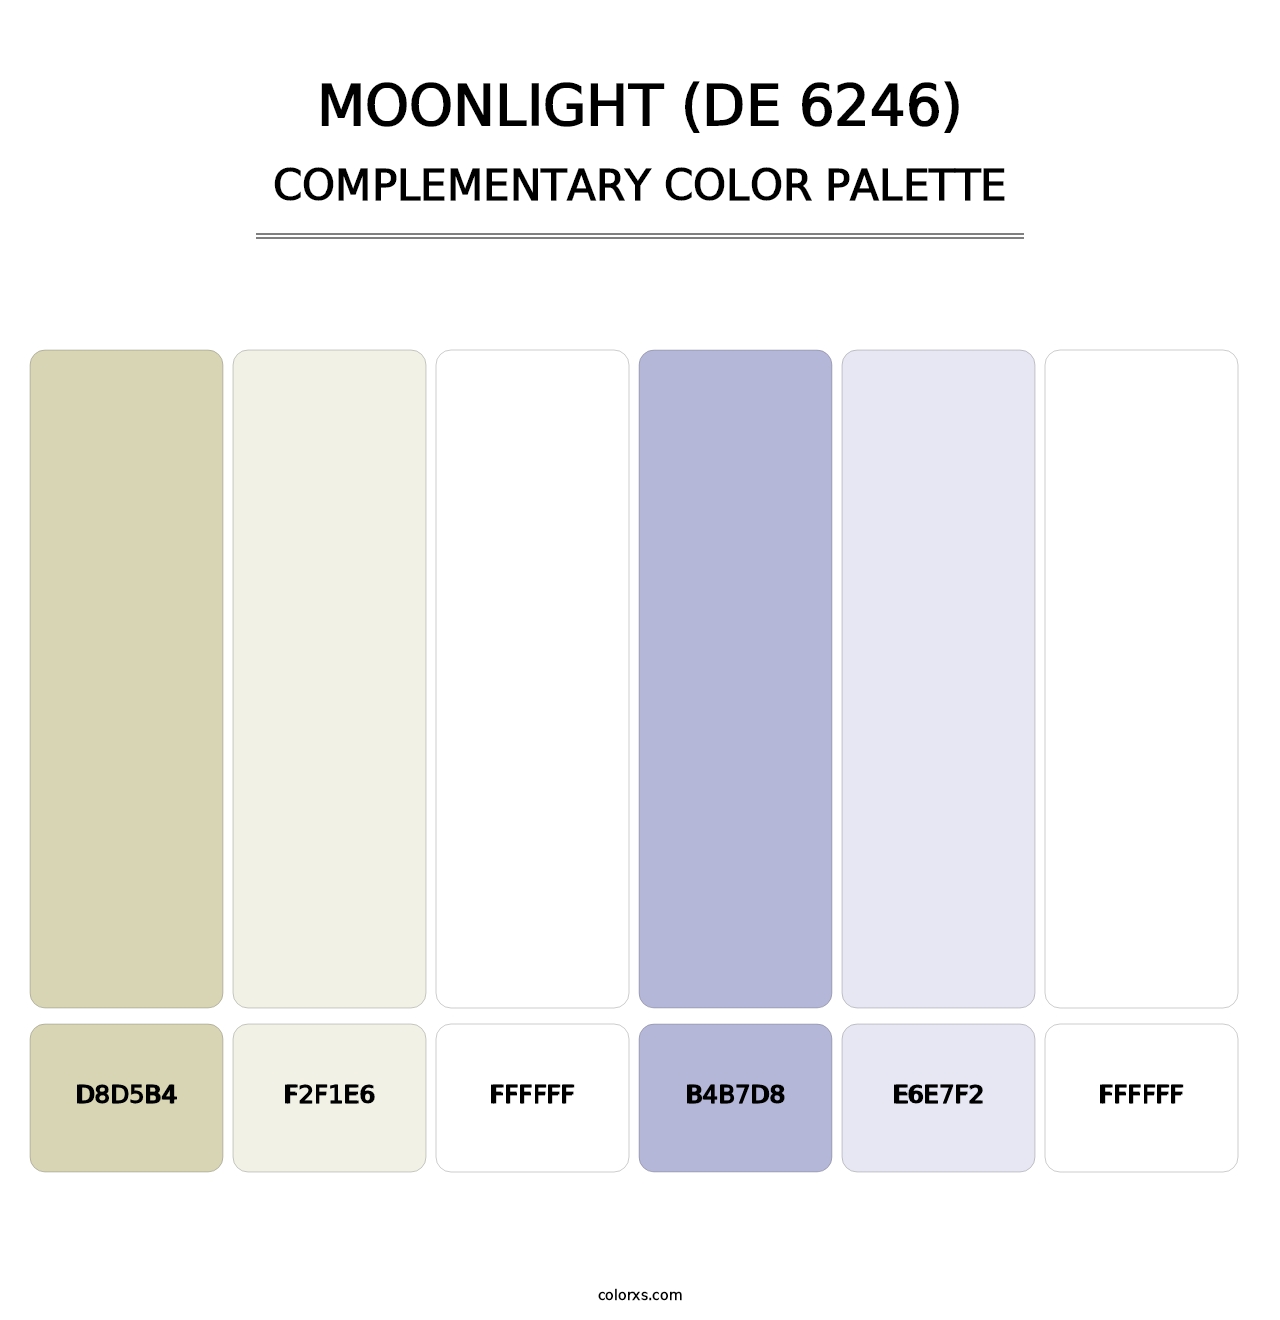 Moonlight (DE 6246) - Complementary Color Palette